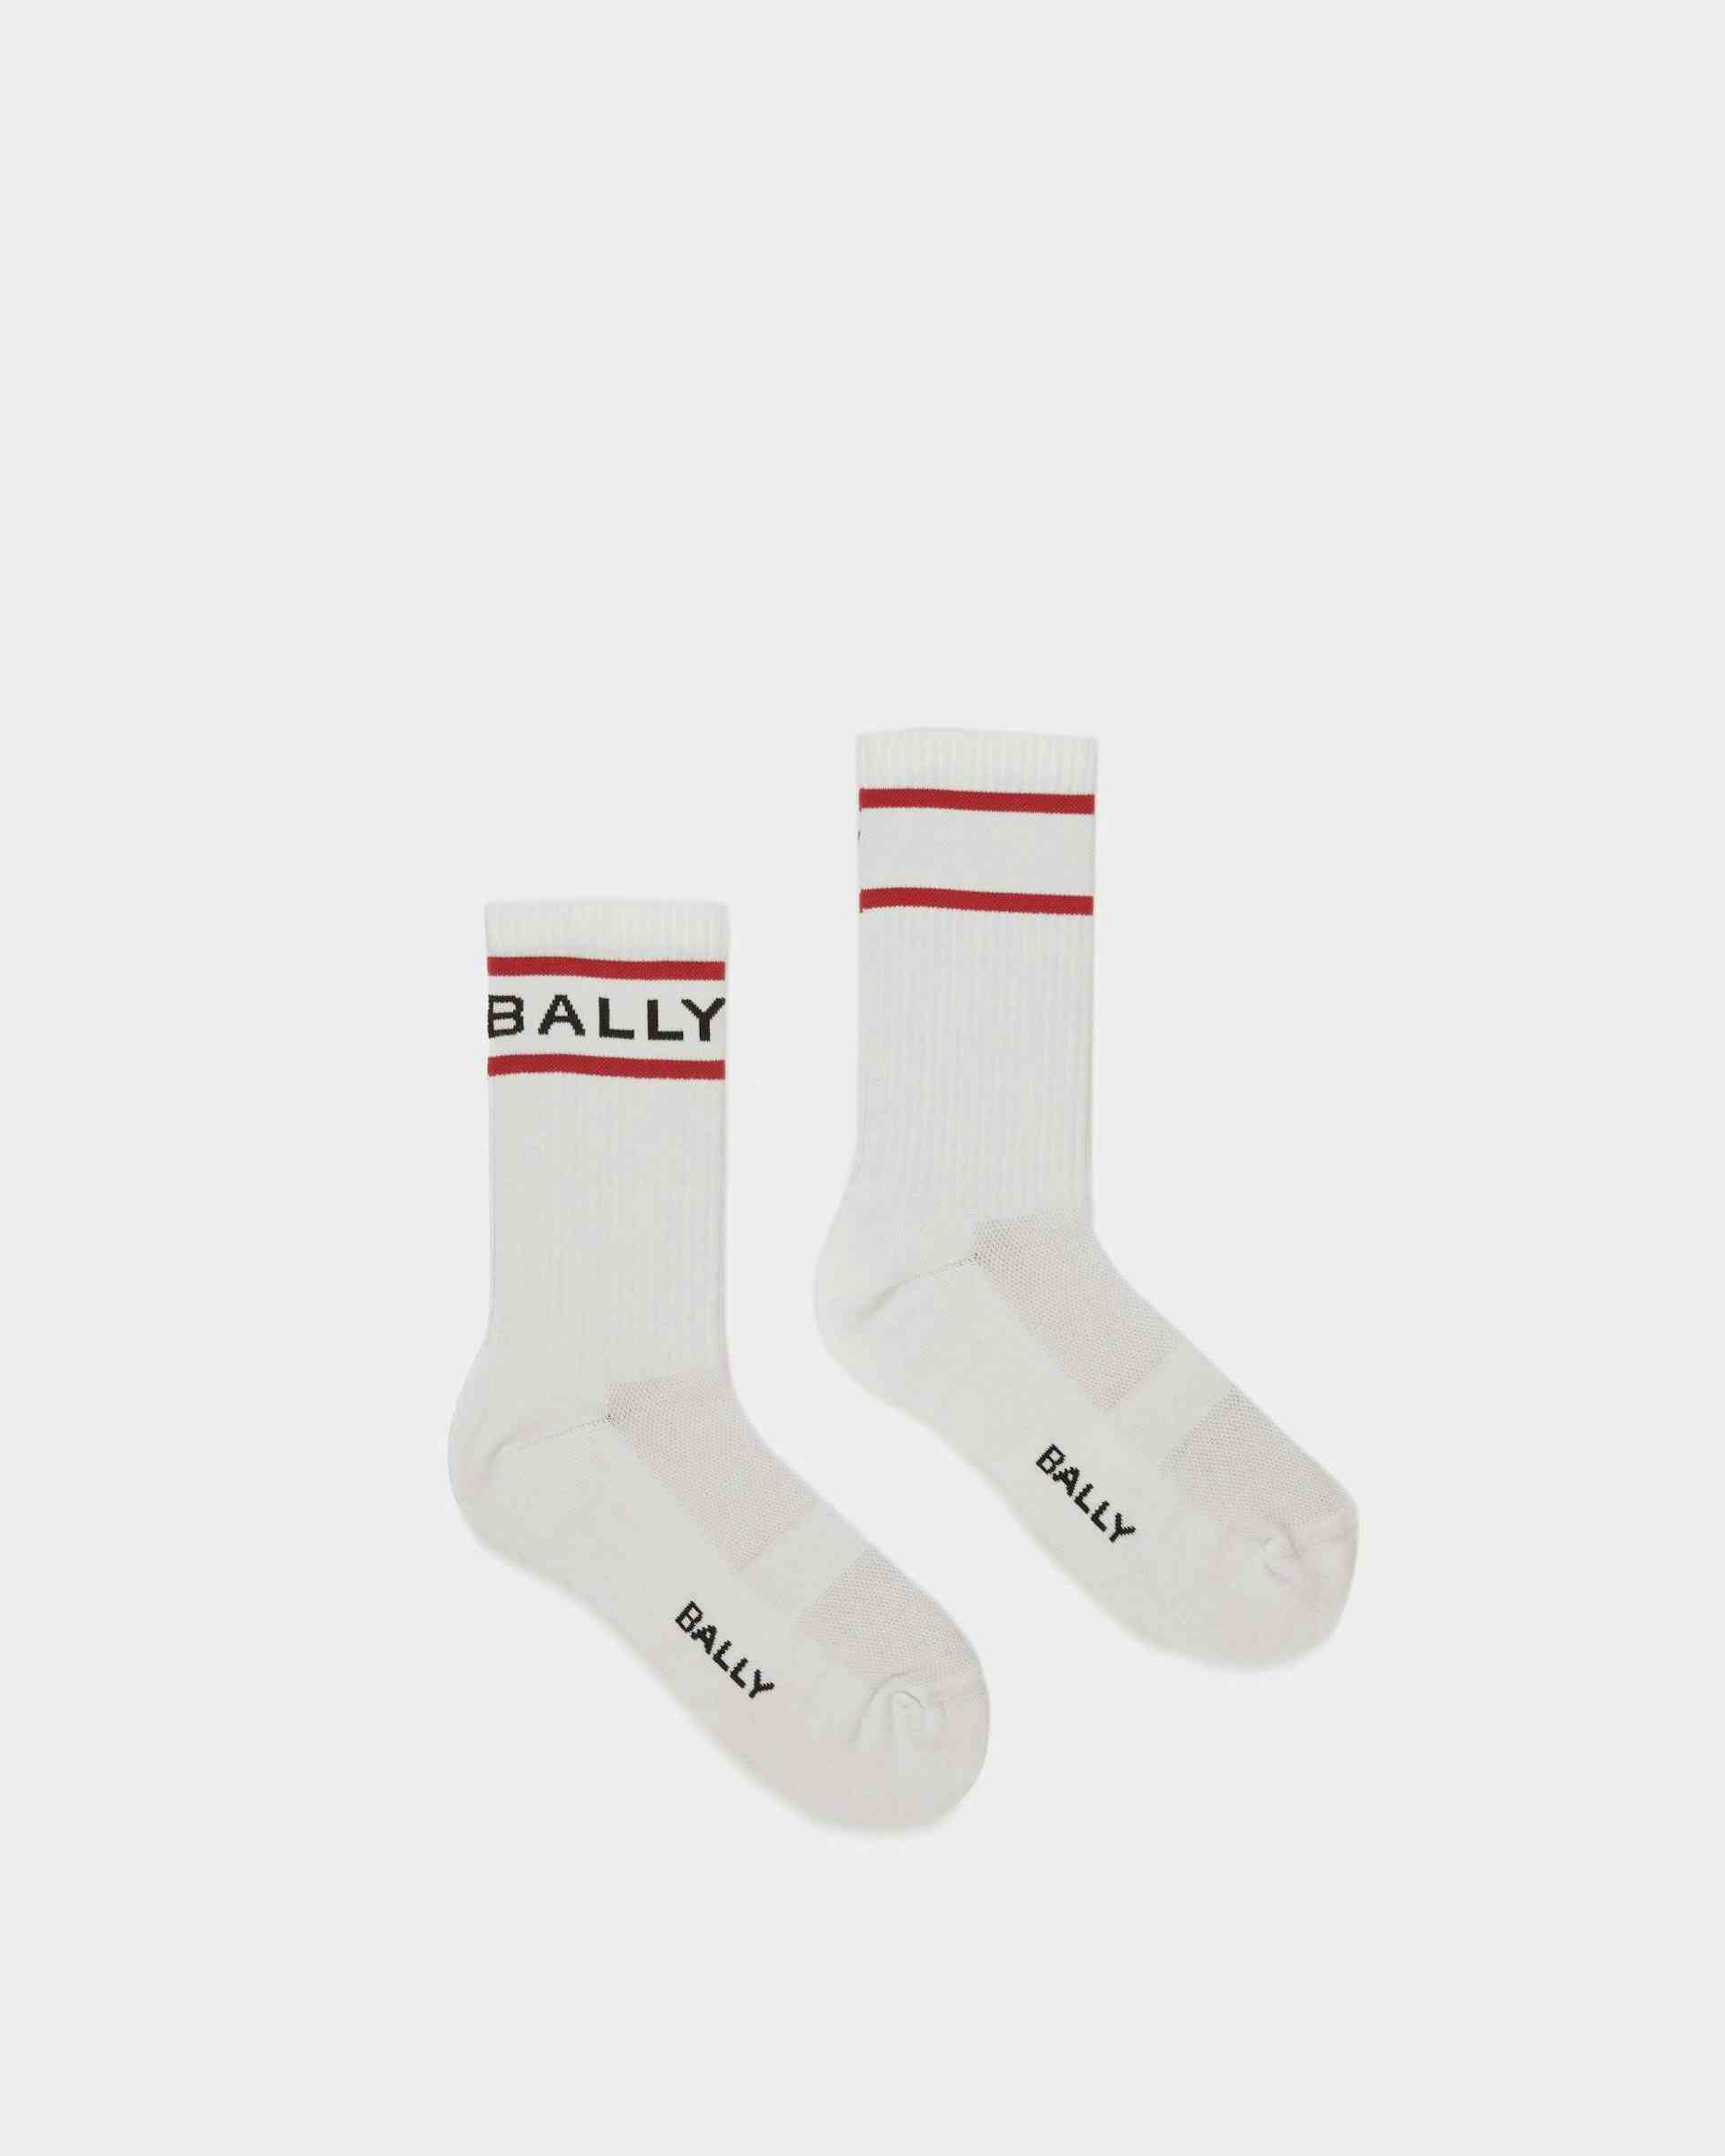 Bally Stripe Socks In White And Deep Ruby - Men's - Bally